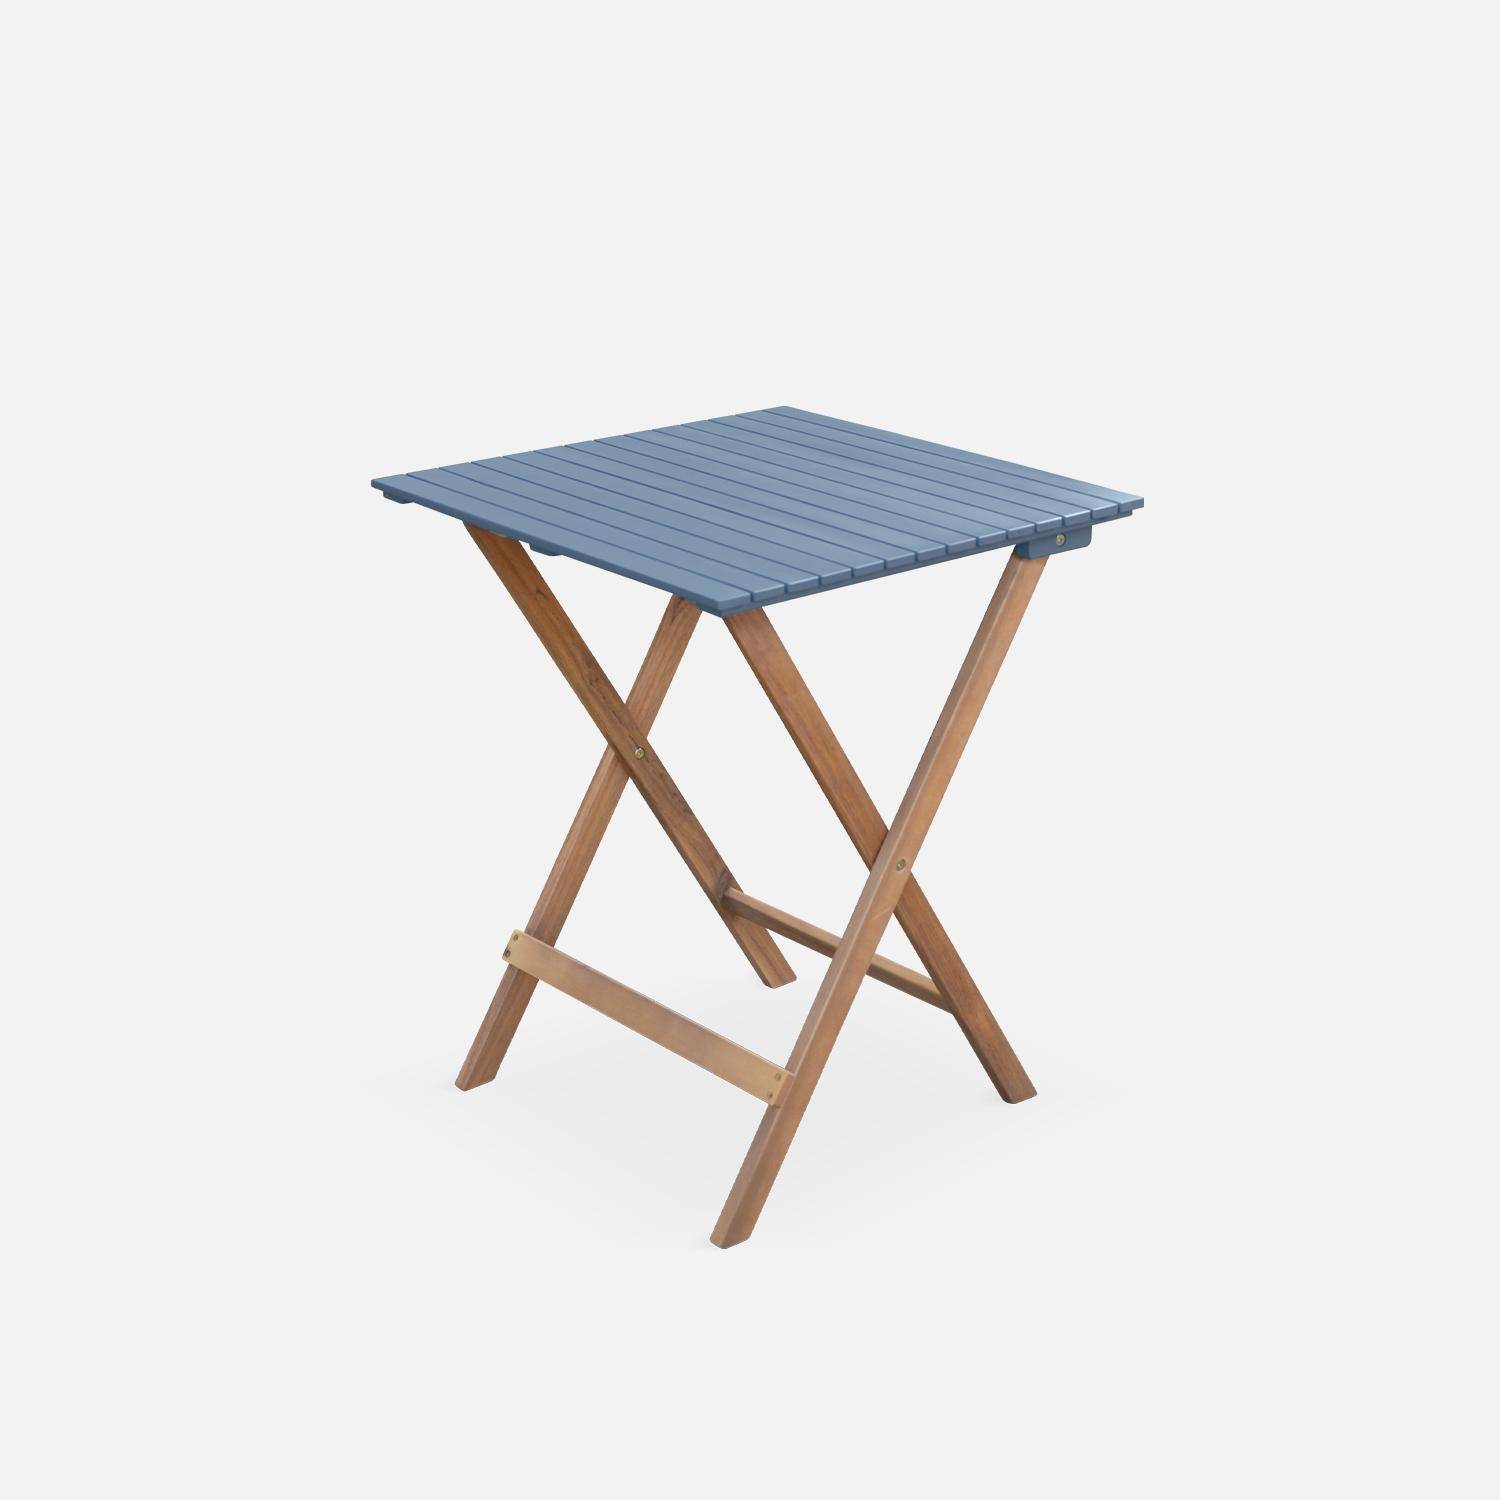 Conjunto de jardín de madera Bistro 60x60cm - Barcelona - azul grisáceo, mesa plegable cuadrada bicolor con 2 sillas plegables, acacia,sweeek,Photo6